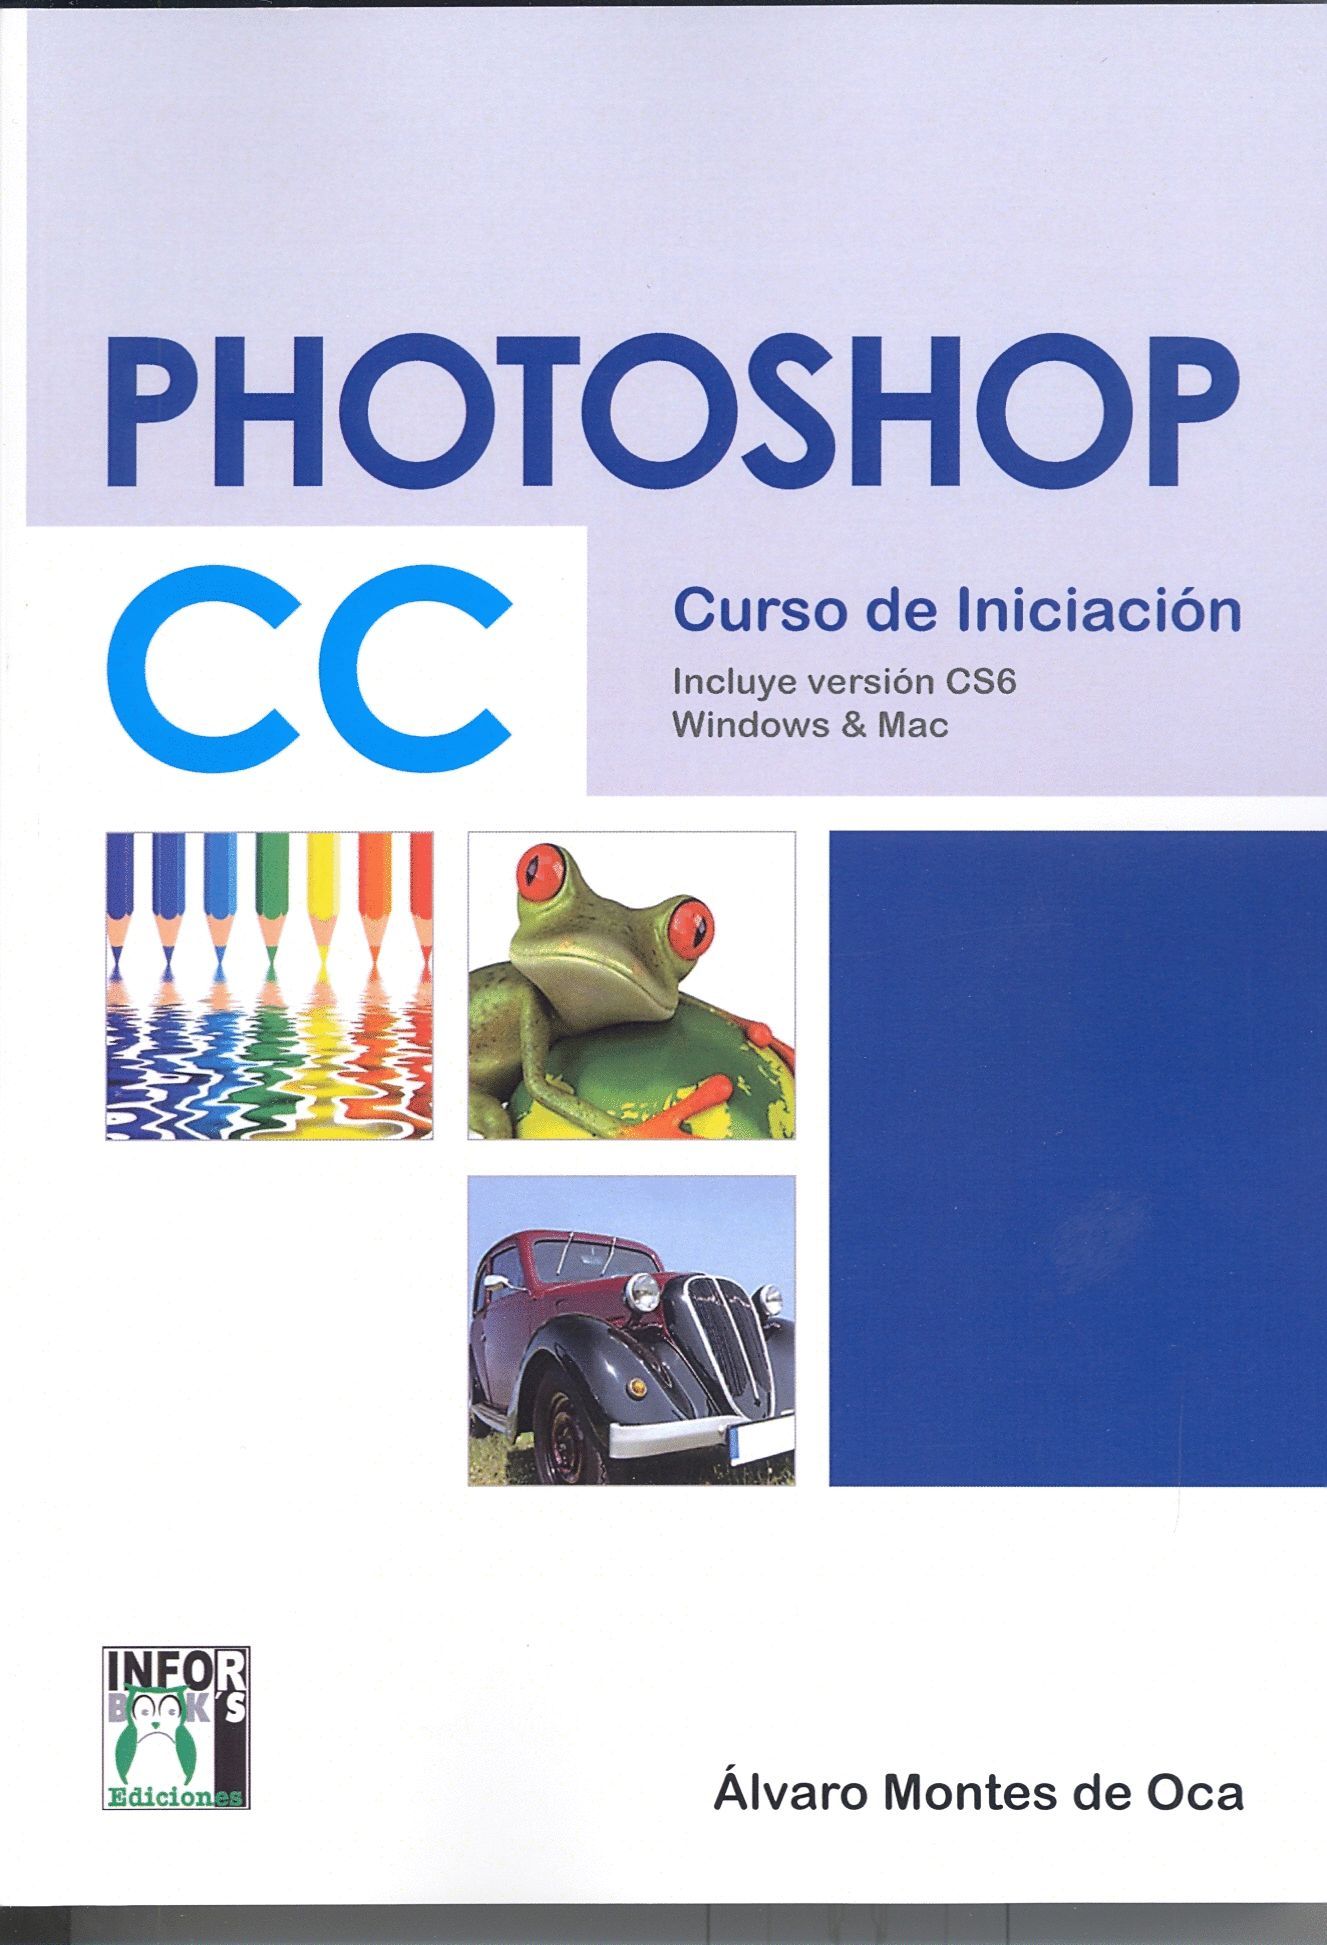 PHOTOSHOP CC CURSO DE INICIACIN